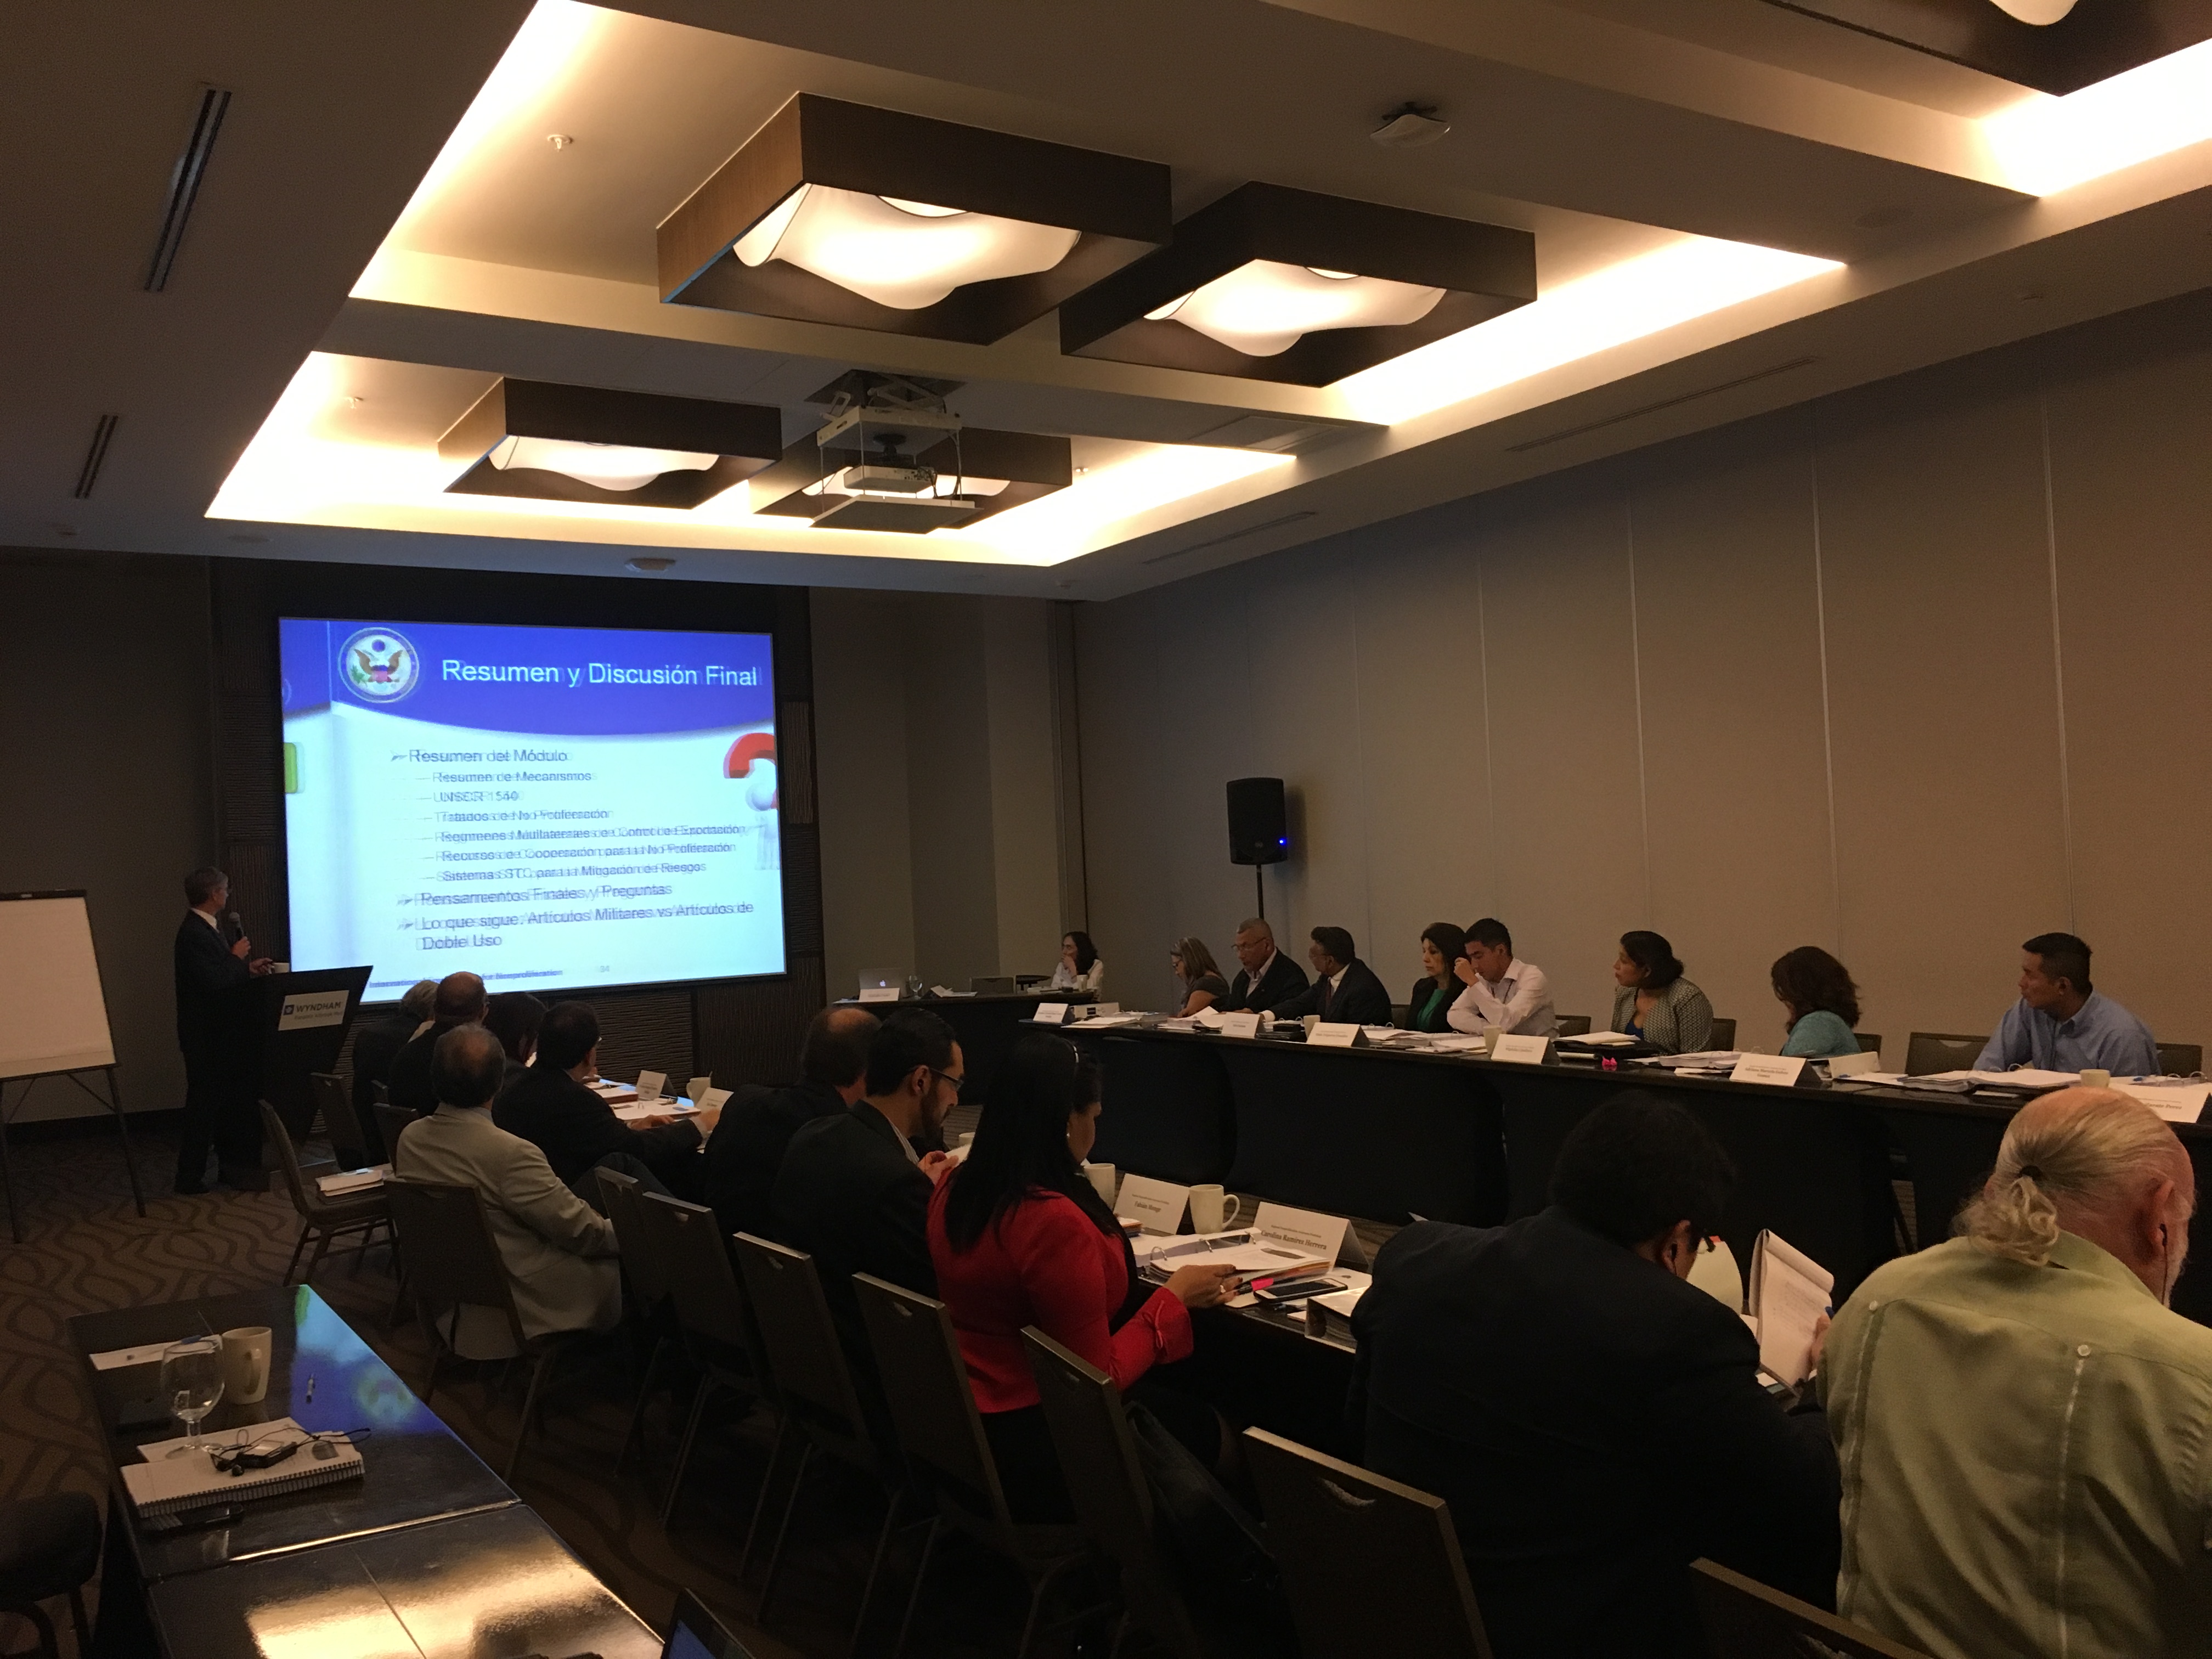 CITS staff in Panama for nonproliferation seminar